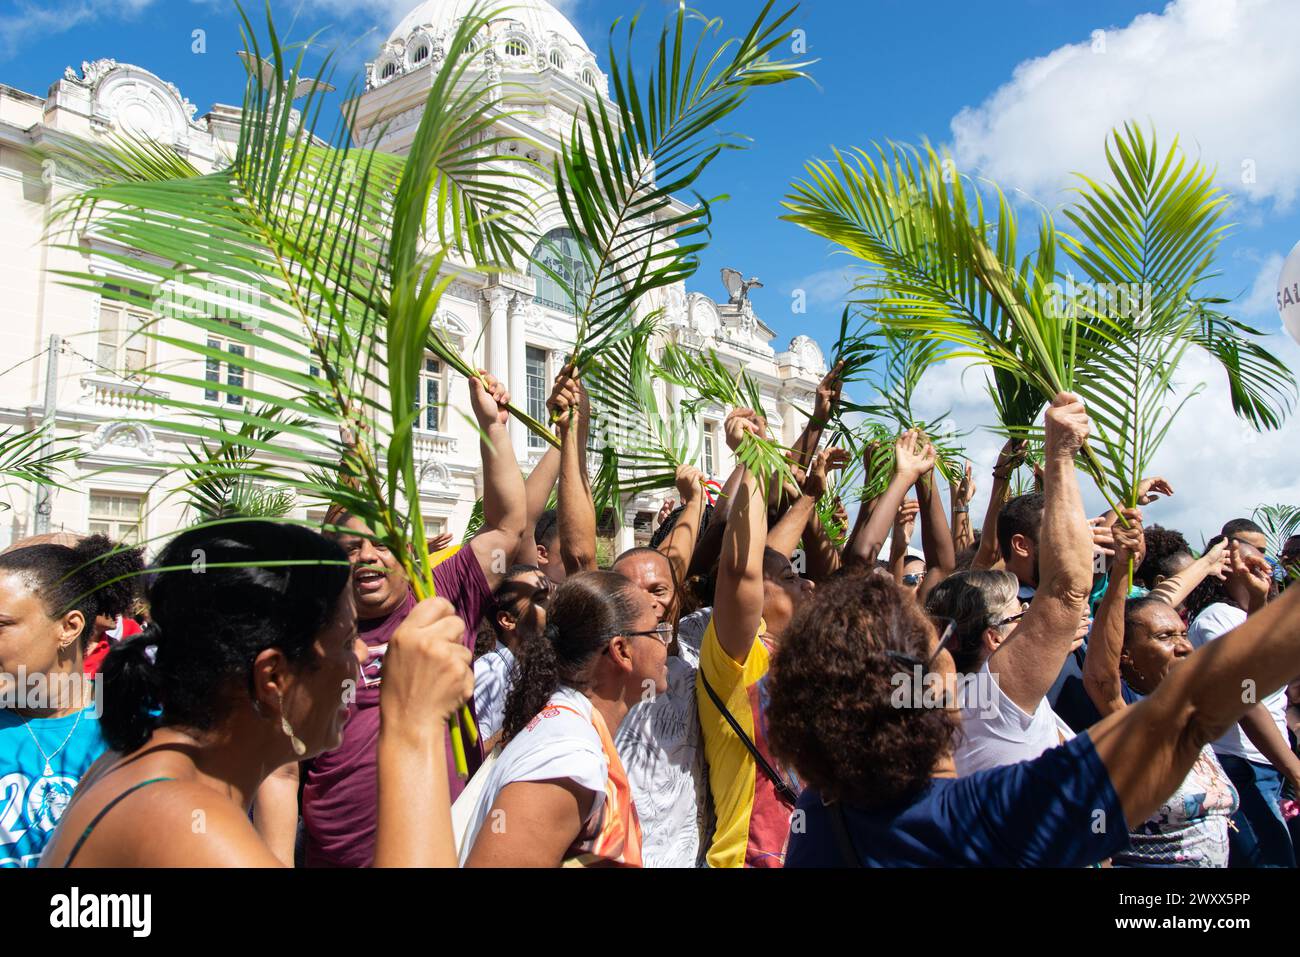 Salvador, Bahia, Brésil - 14 avril 2019 : des foules de catholiques participent à la procession du dimanche des Rameaux dans la ville de Salvador, Bahia. Banque D'Images